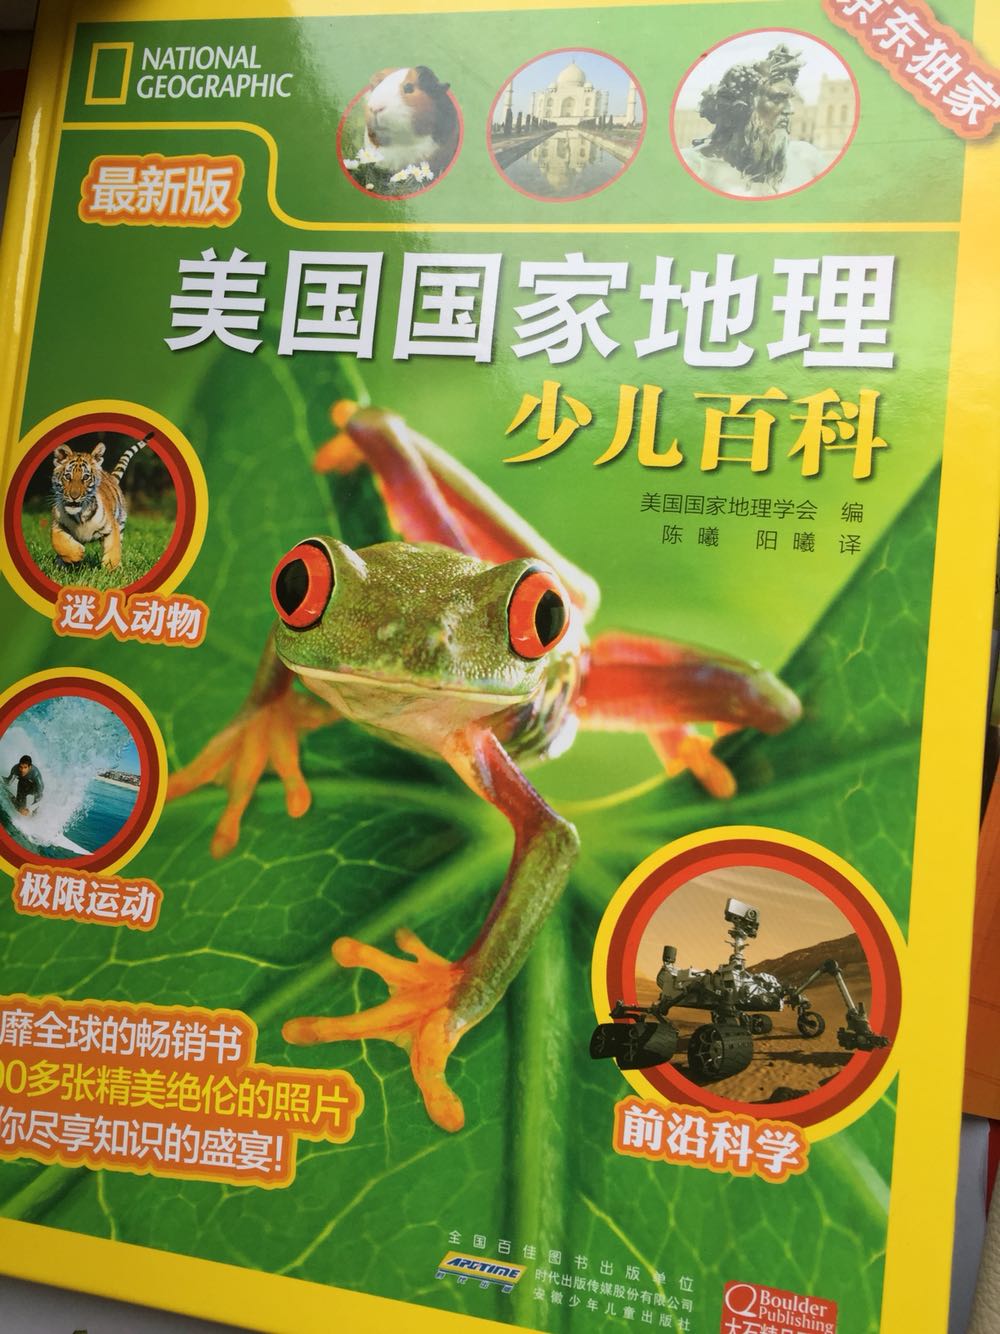 这种破书还这么贵，跟那些动物植物大百科有什么区别？